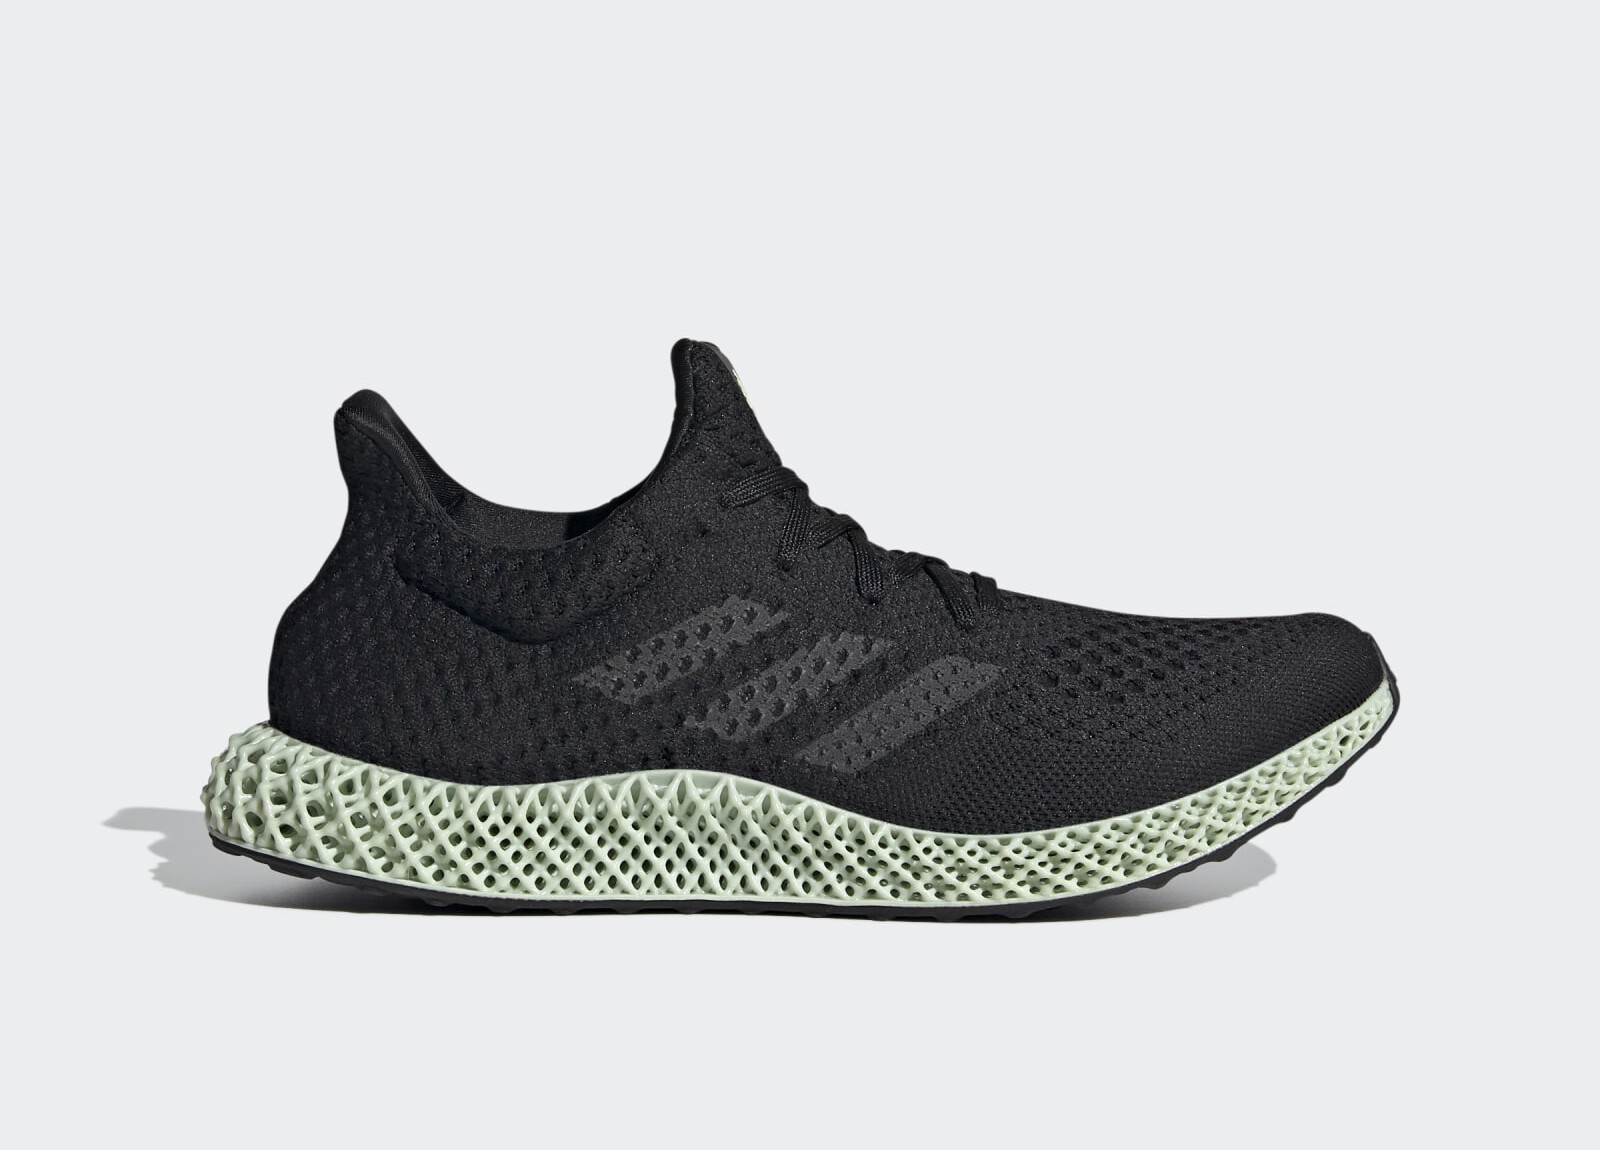 Adidas 4D Futurecraft
Black / Linen Green